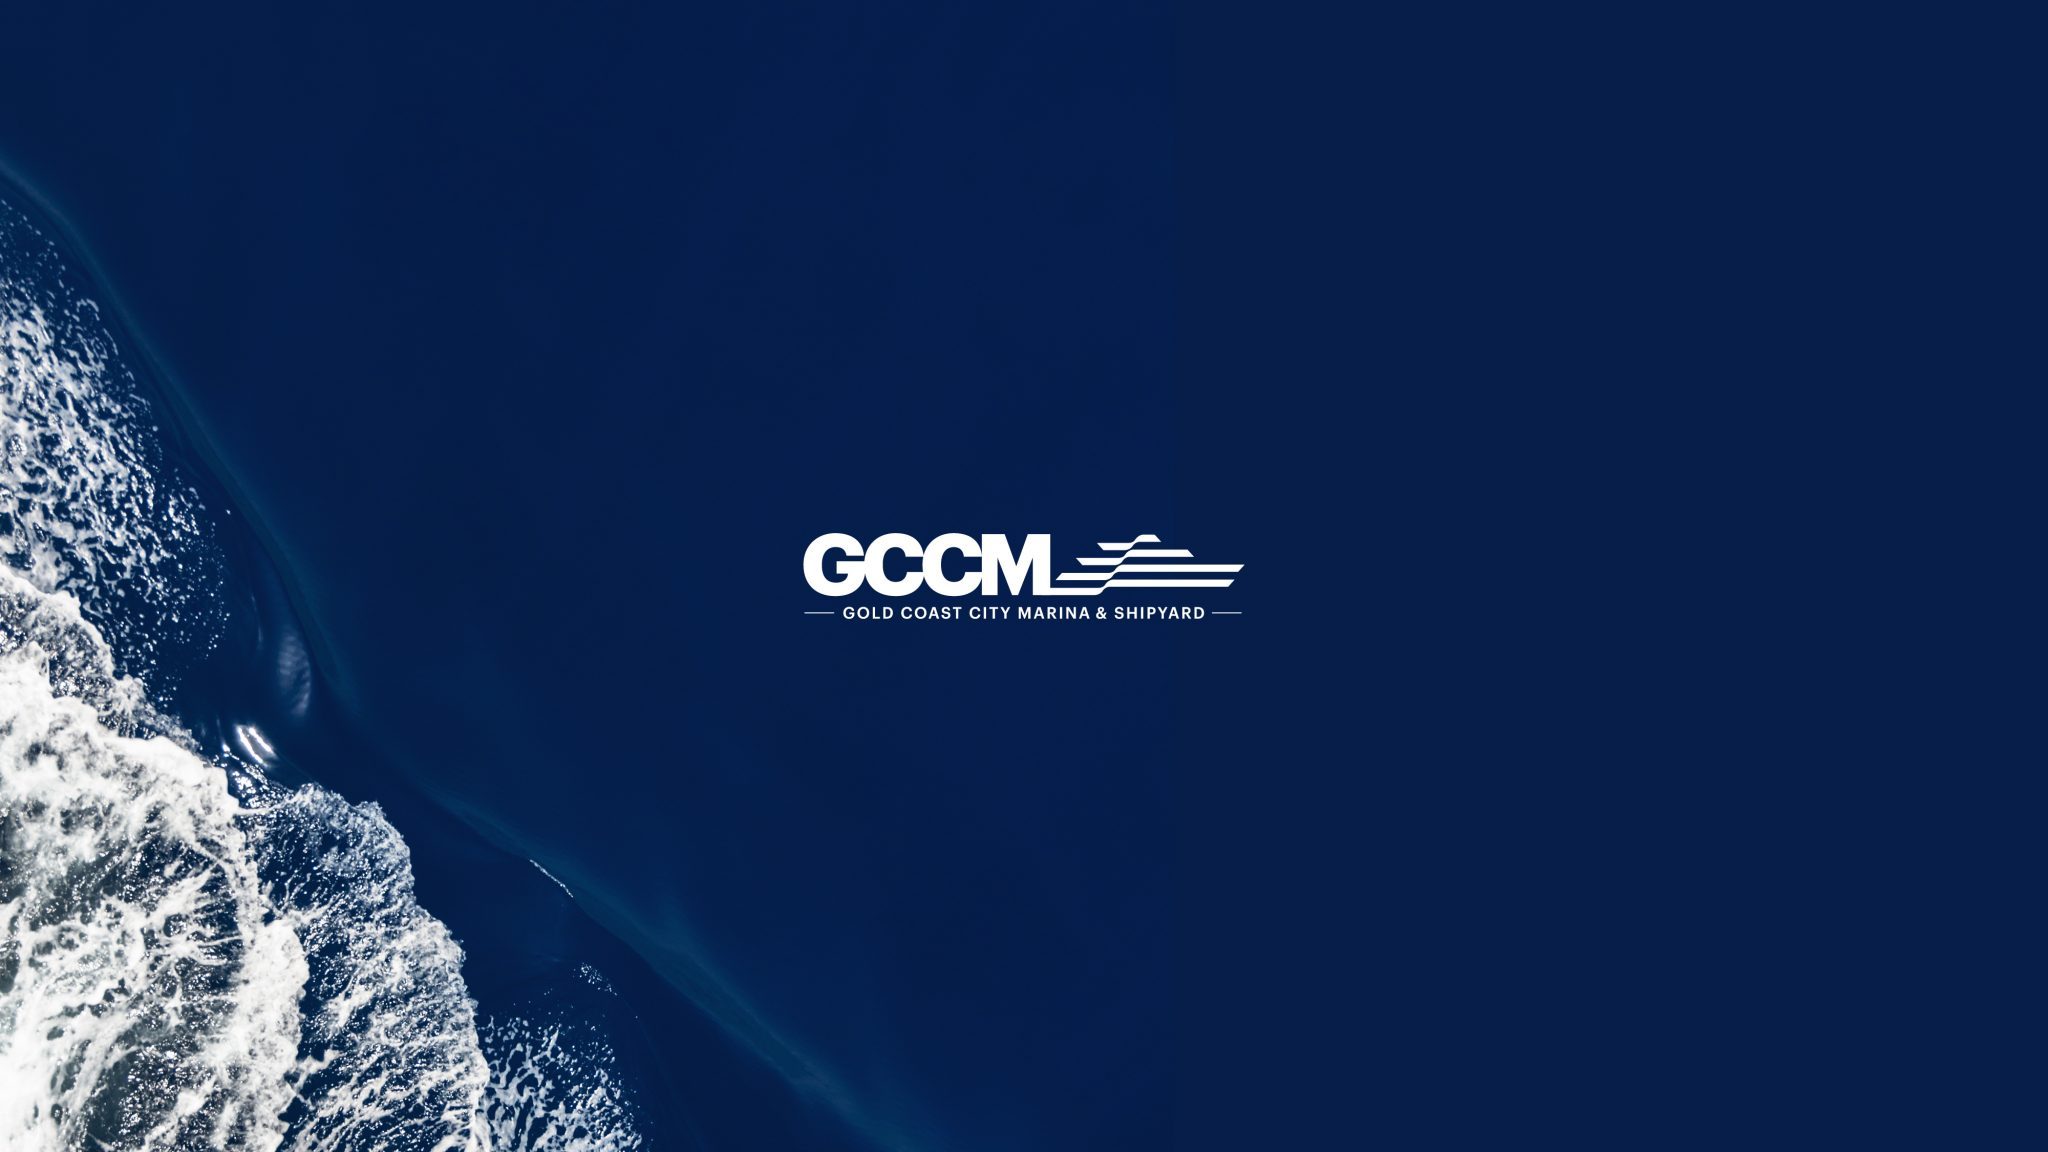 Gold Coast City Marina's new brand identity was created by Alike Agency.